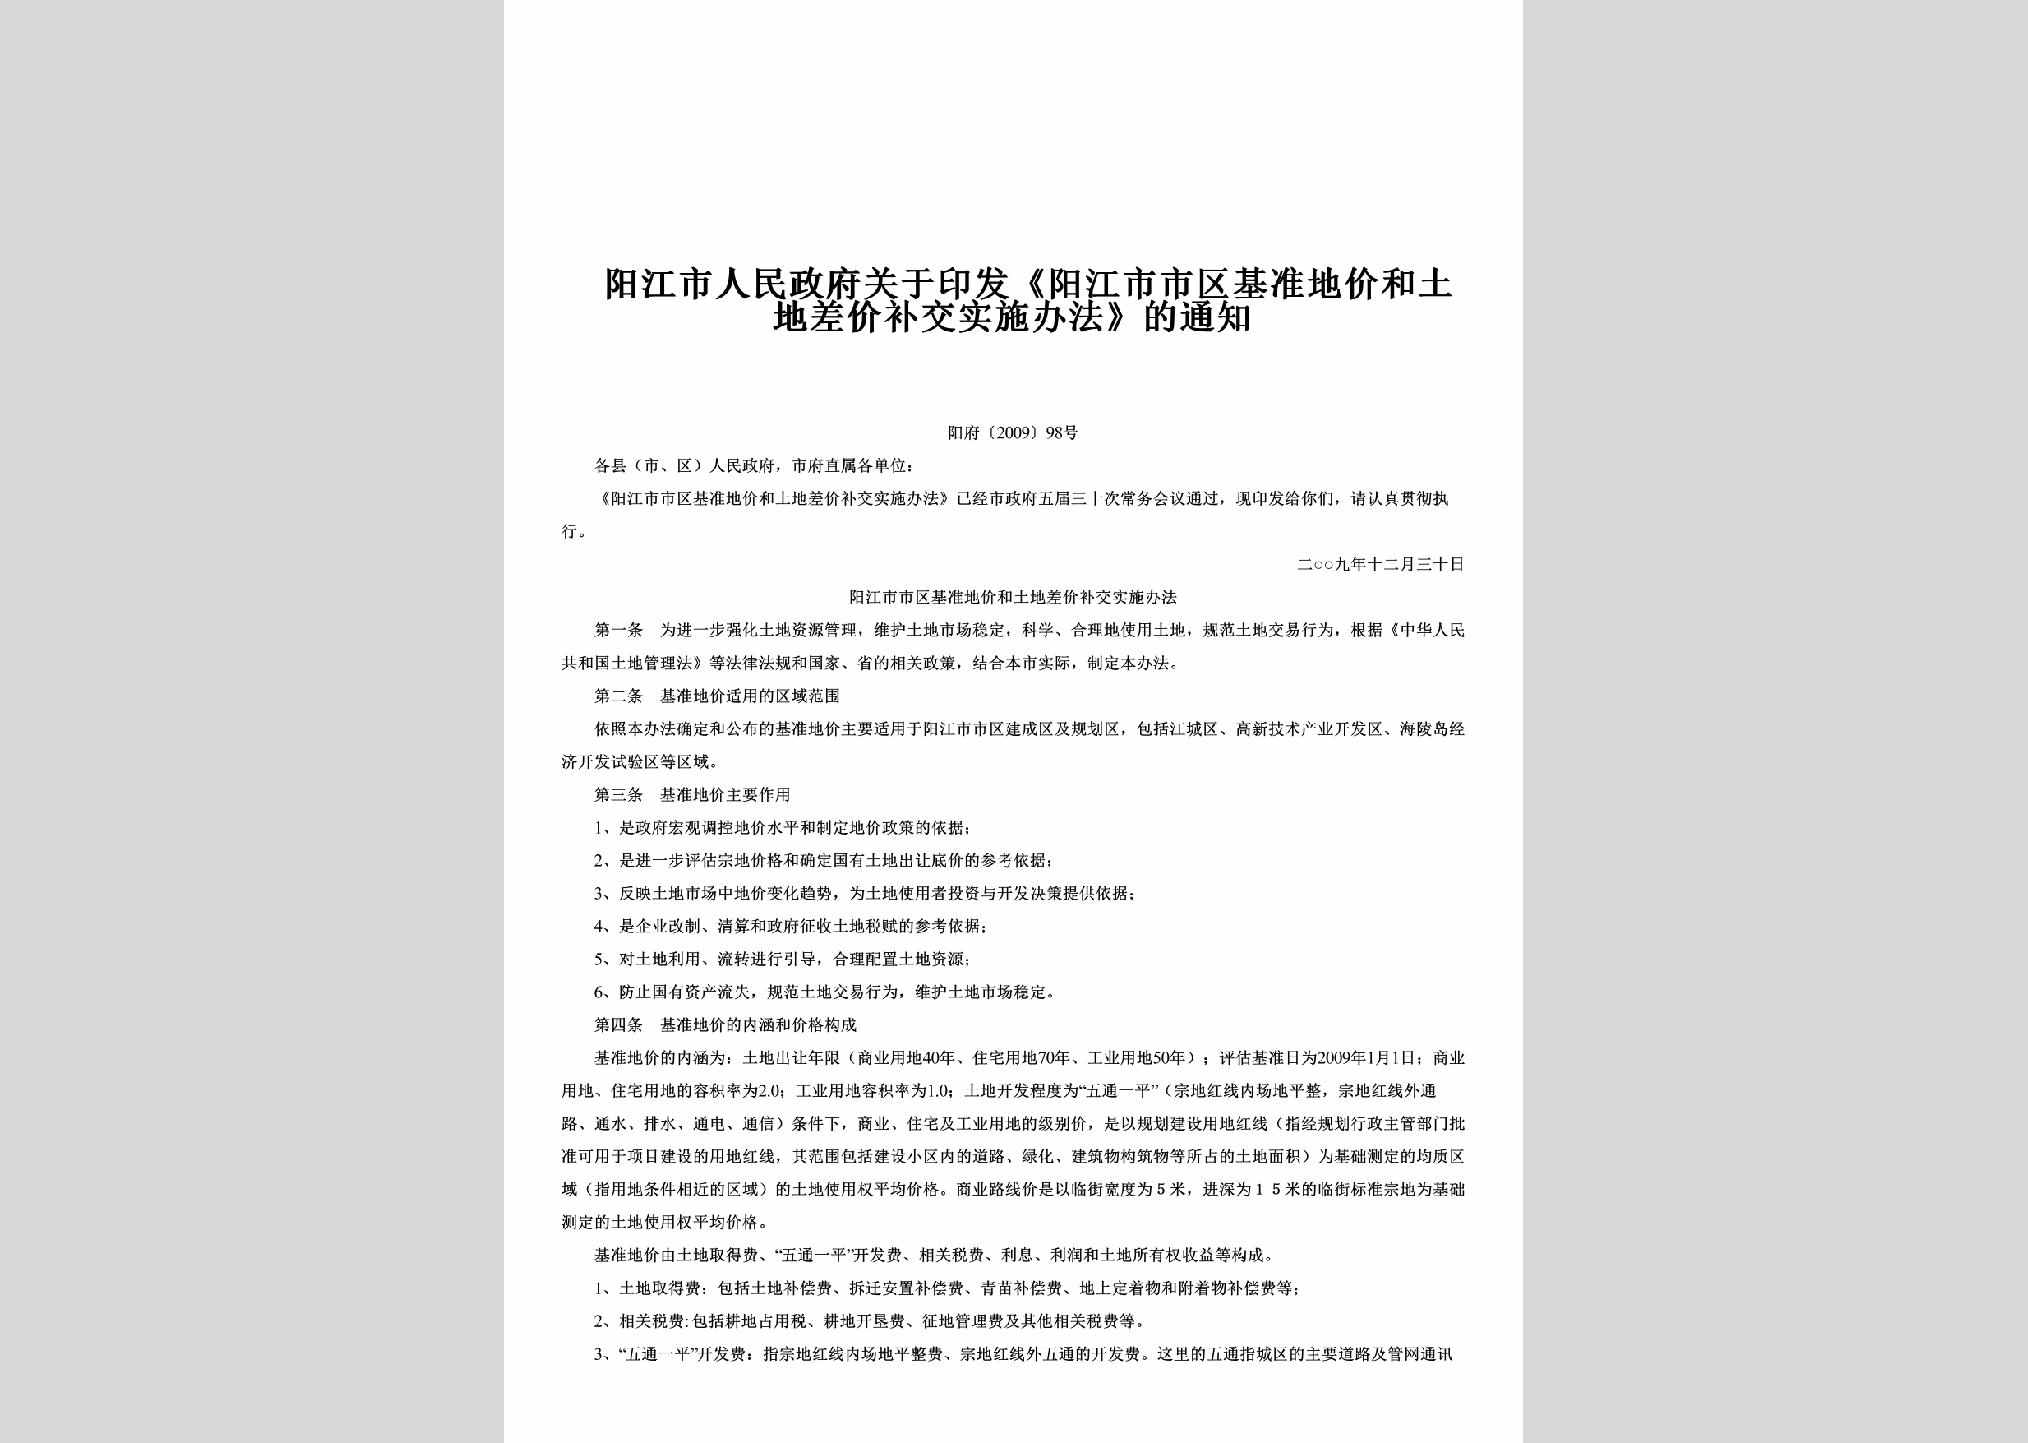 阳府[2009]98号：关于印发《阳江市市区基准地价和土地差价补交实施办法》的通知